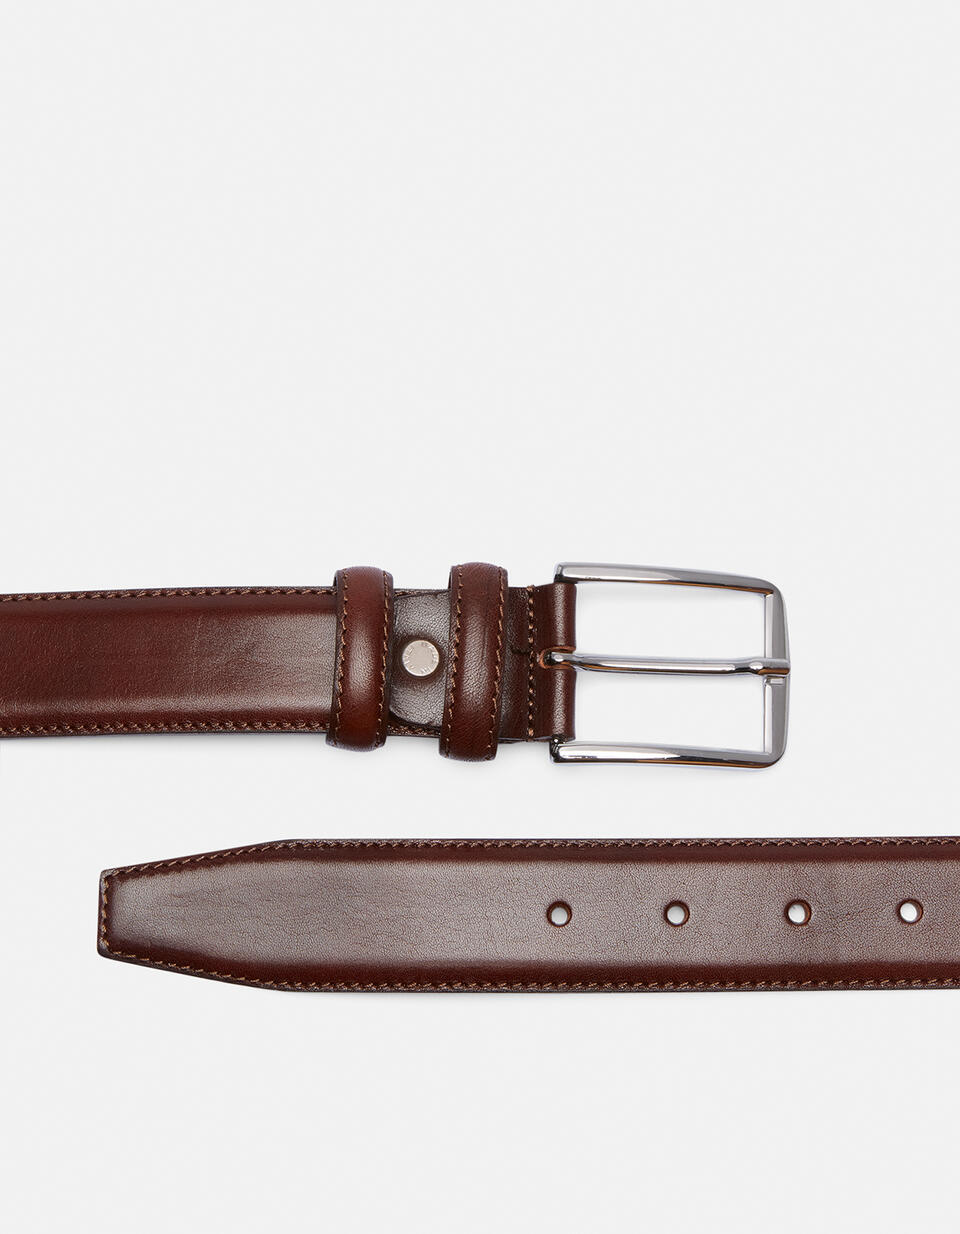 Cintura Elegante in Pelle 3,5 cm Testa di moro  - Cinture Uomo - Cinture - Cuoieria Fiorentina